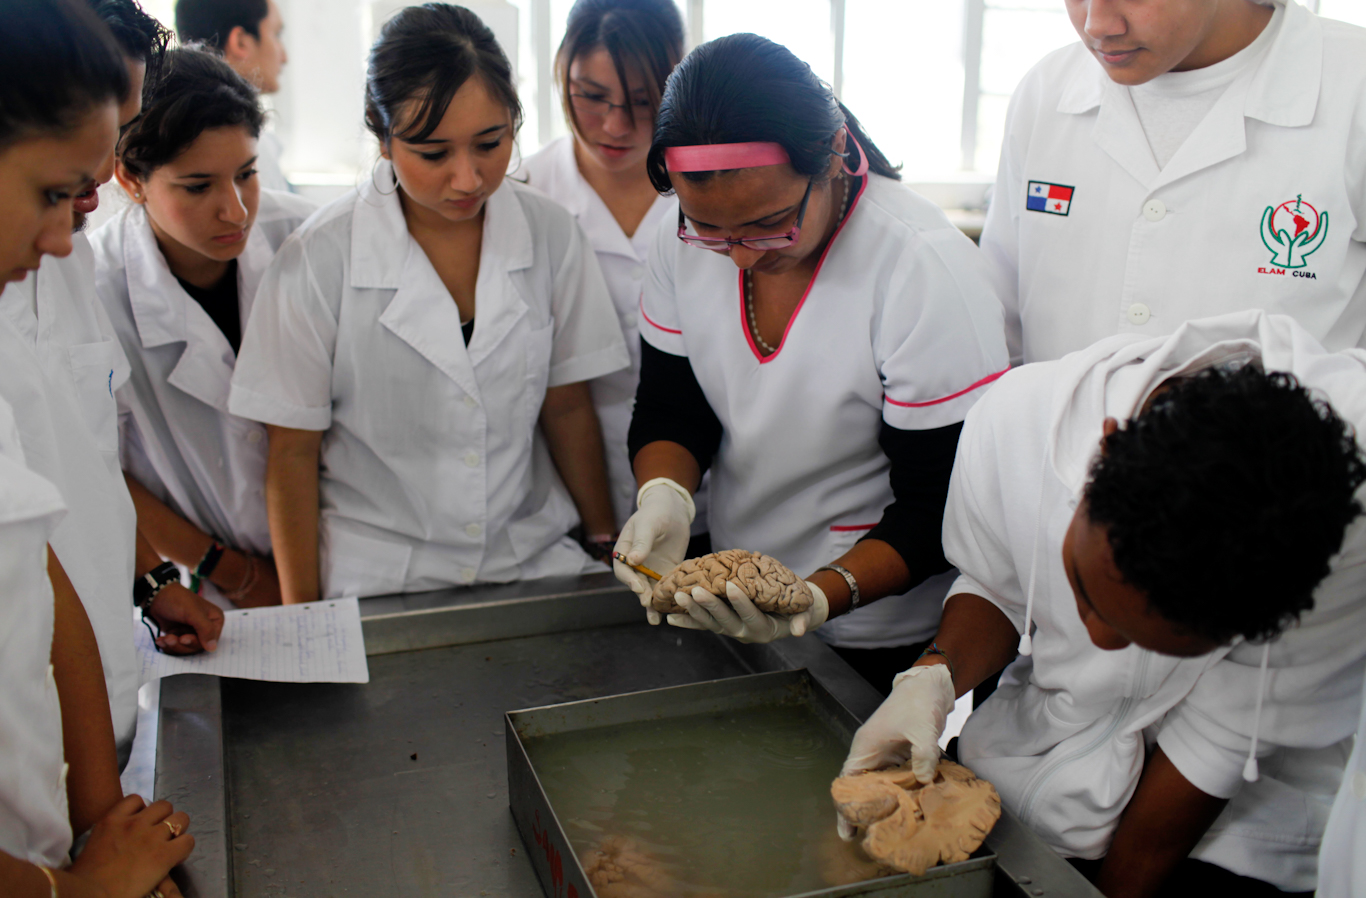 Cuba medical school